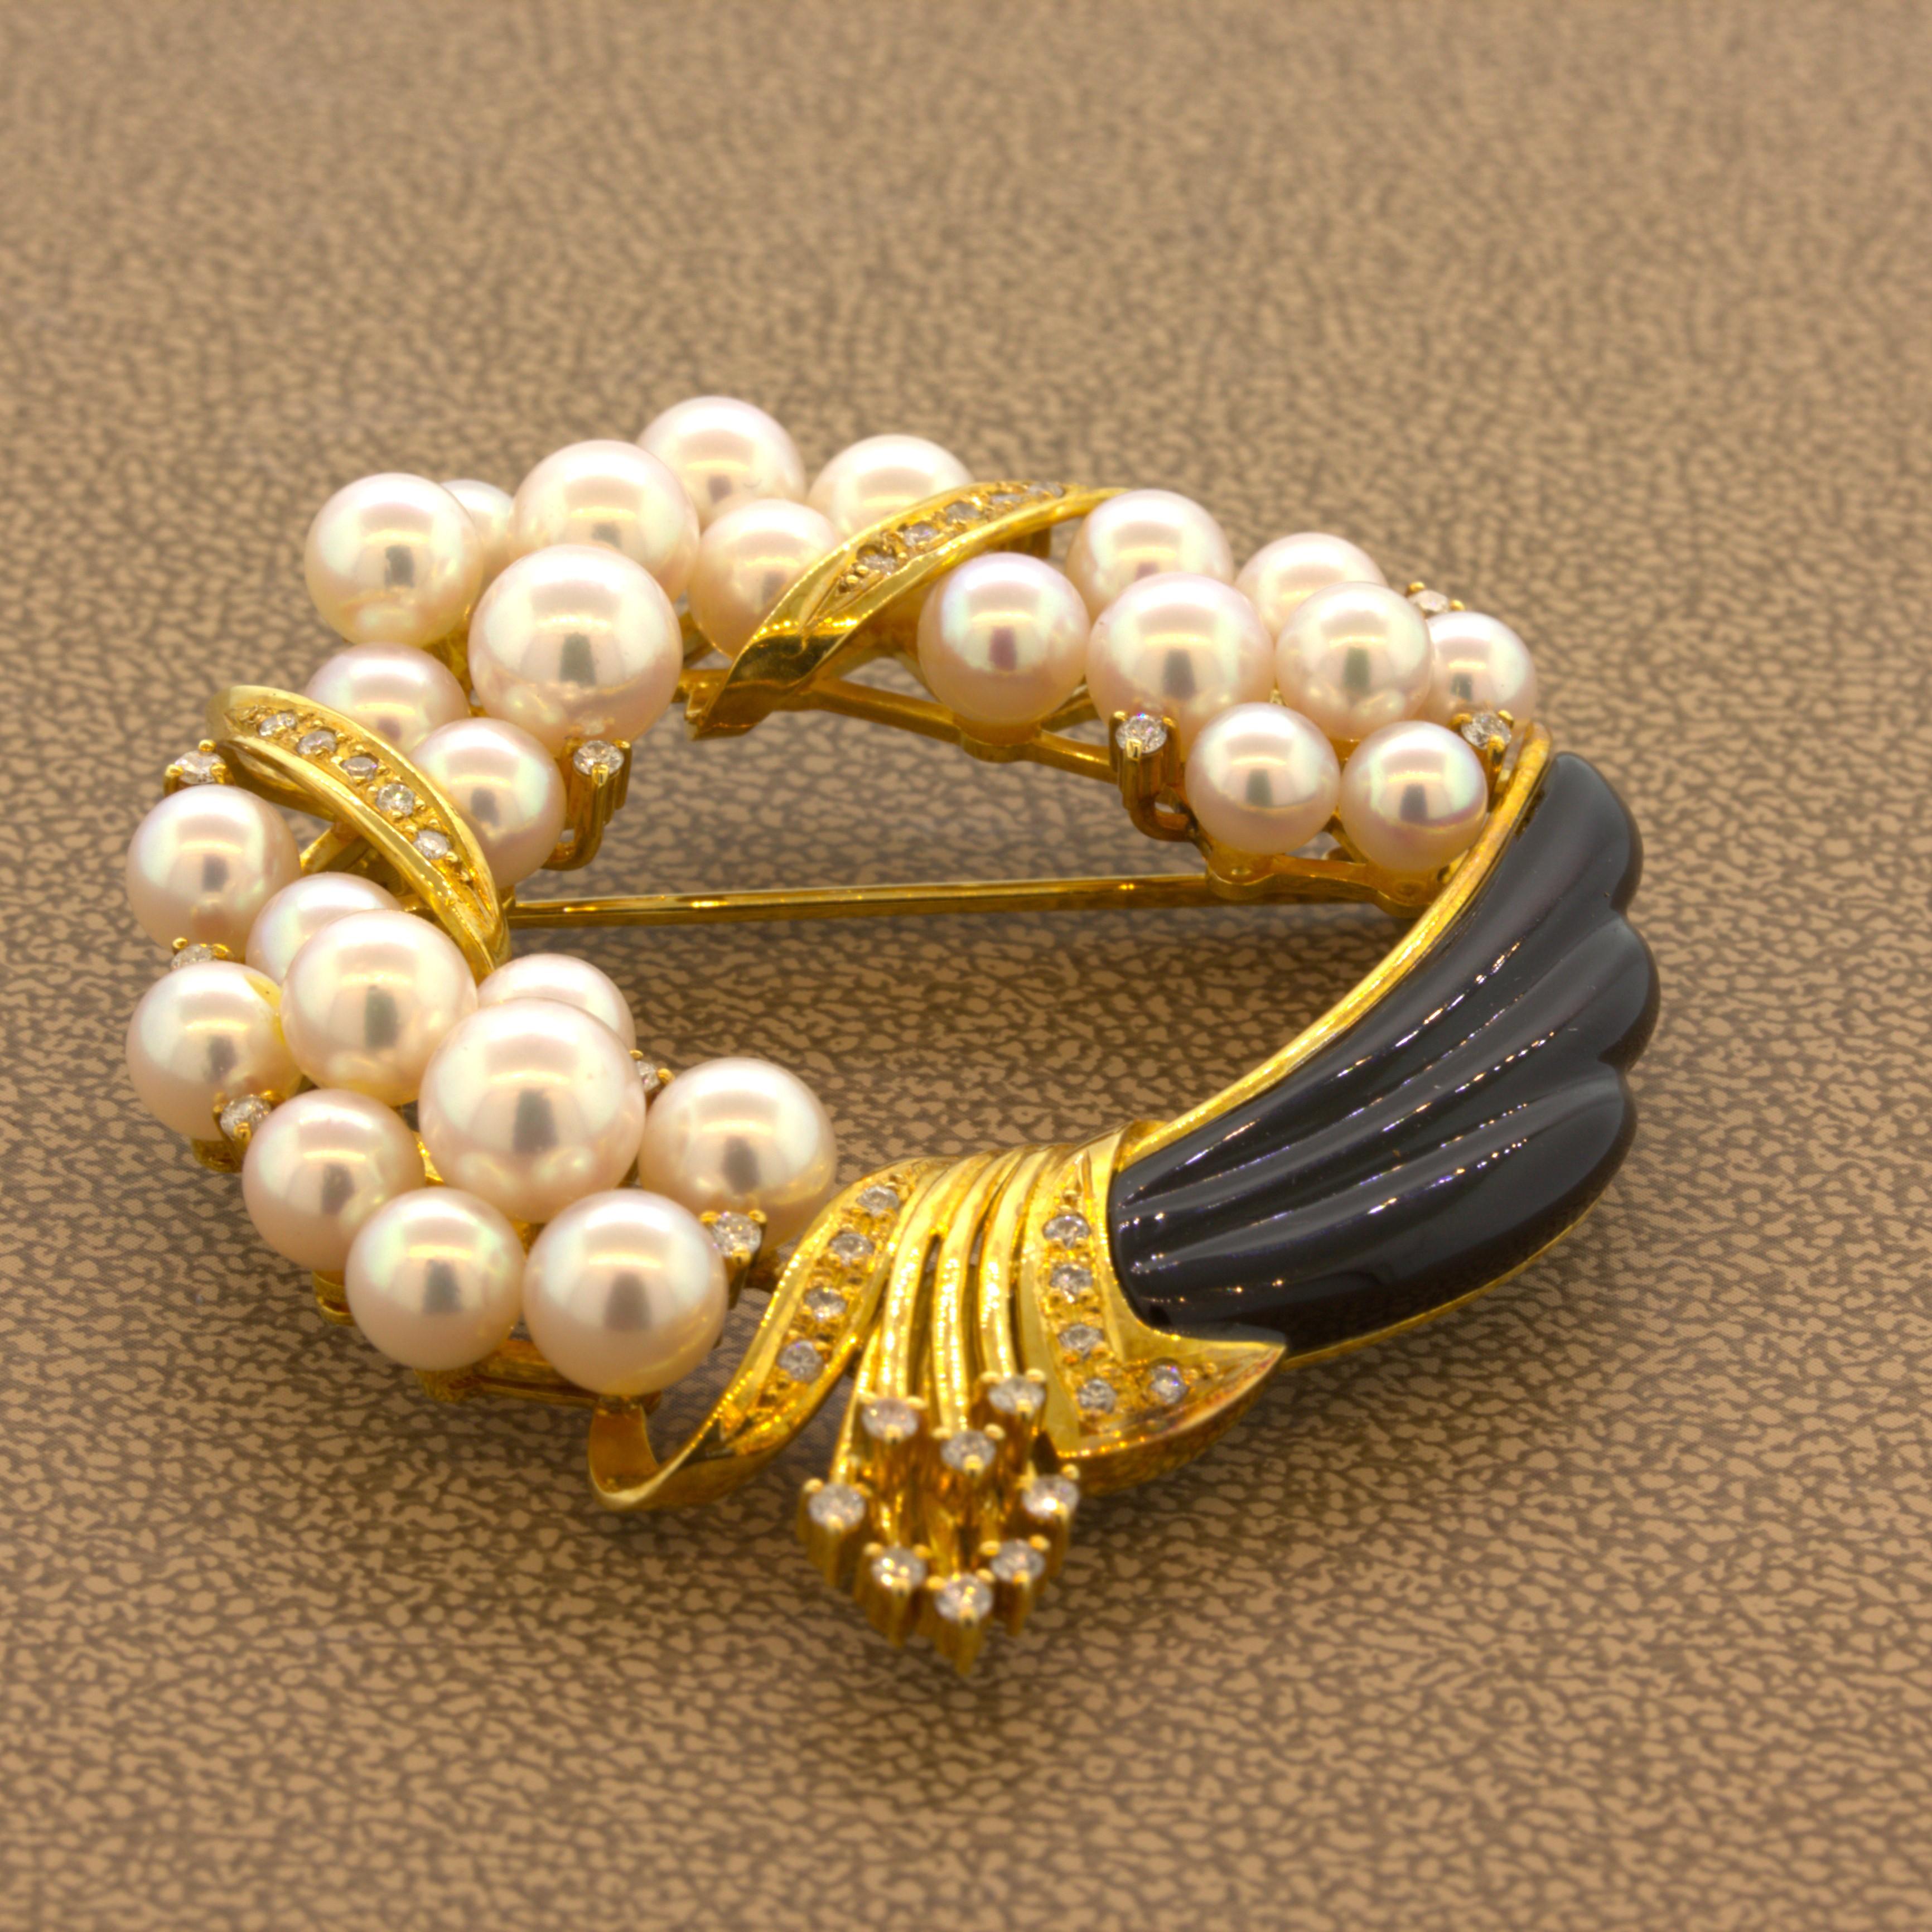 Une broche chic et élégante présentant une pléthore de fines perles d'Akoya AAA. Les perles mesurent 5 mm x 6,5 mm de diamètre et sont de la plus haute qualité. Chaque perle est parfaitement arrondie, très brillante et d'un rose très prononcé qui